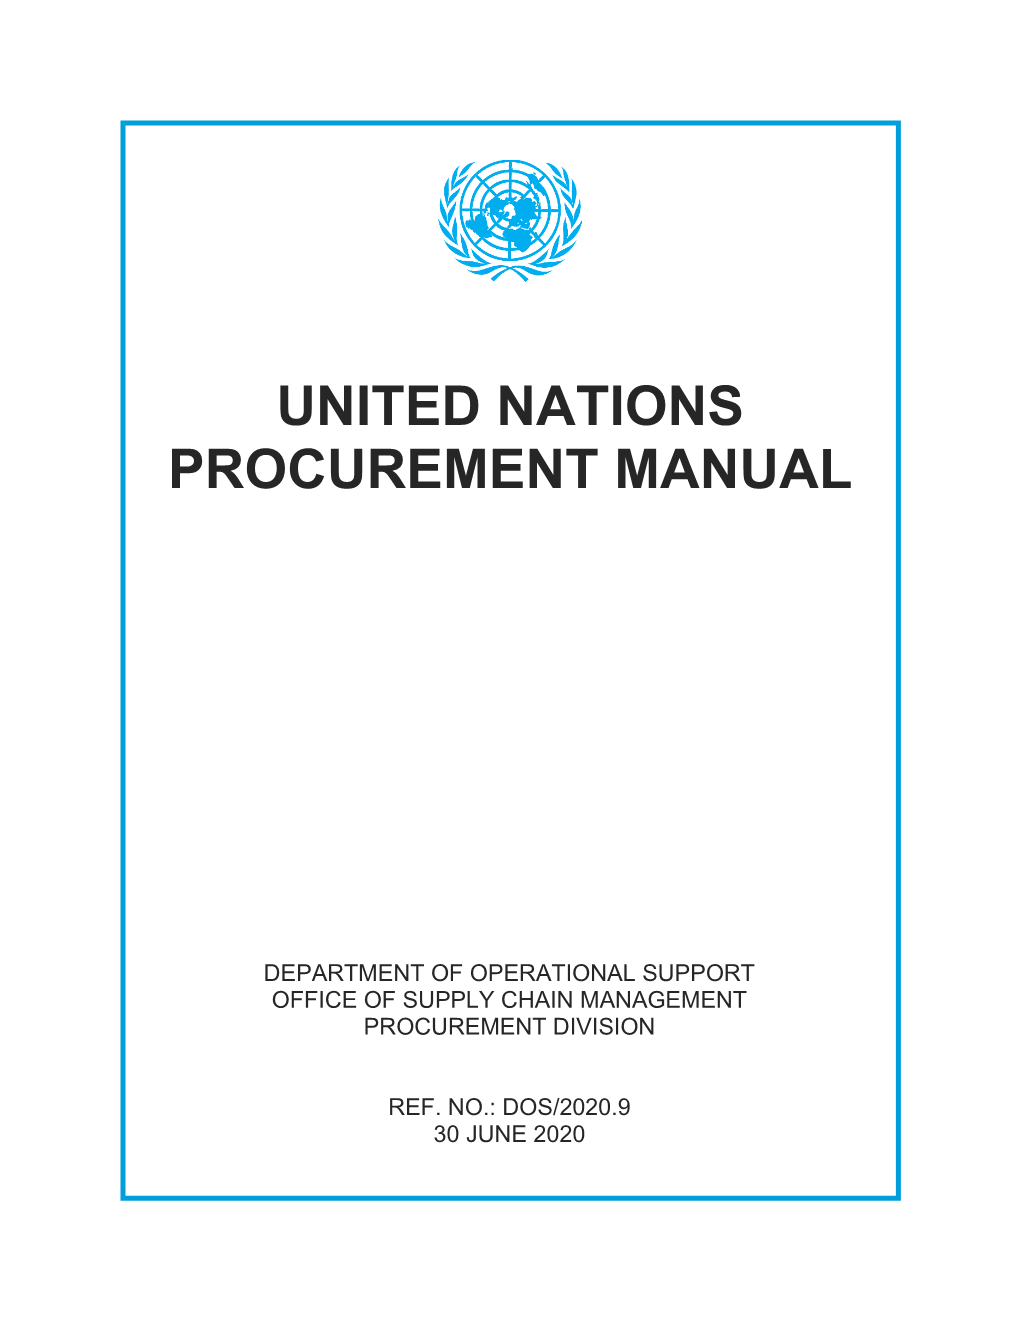 United Nations Procurement Manual